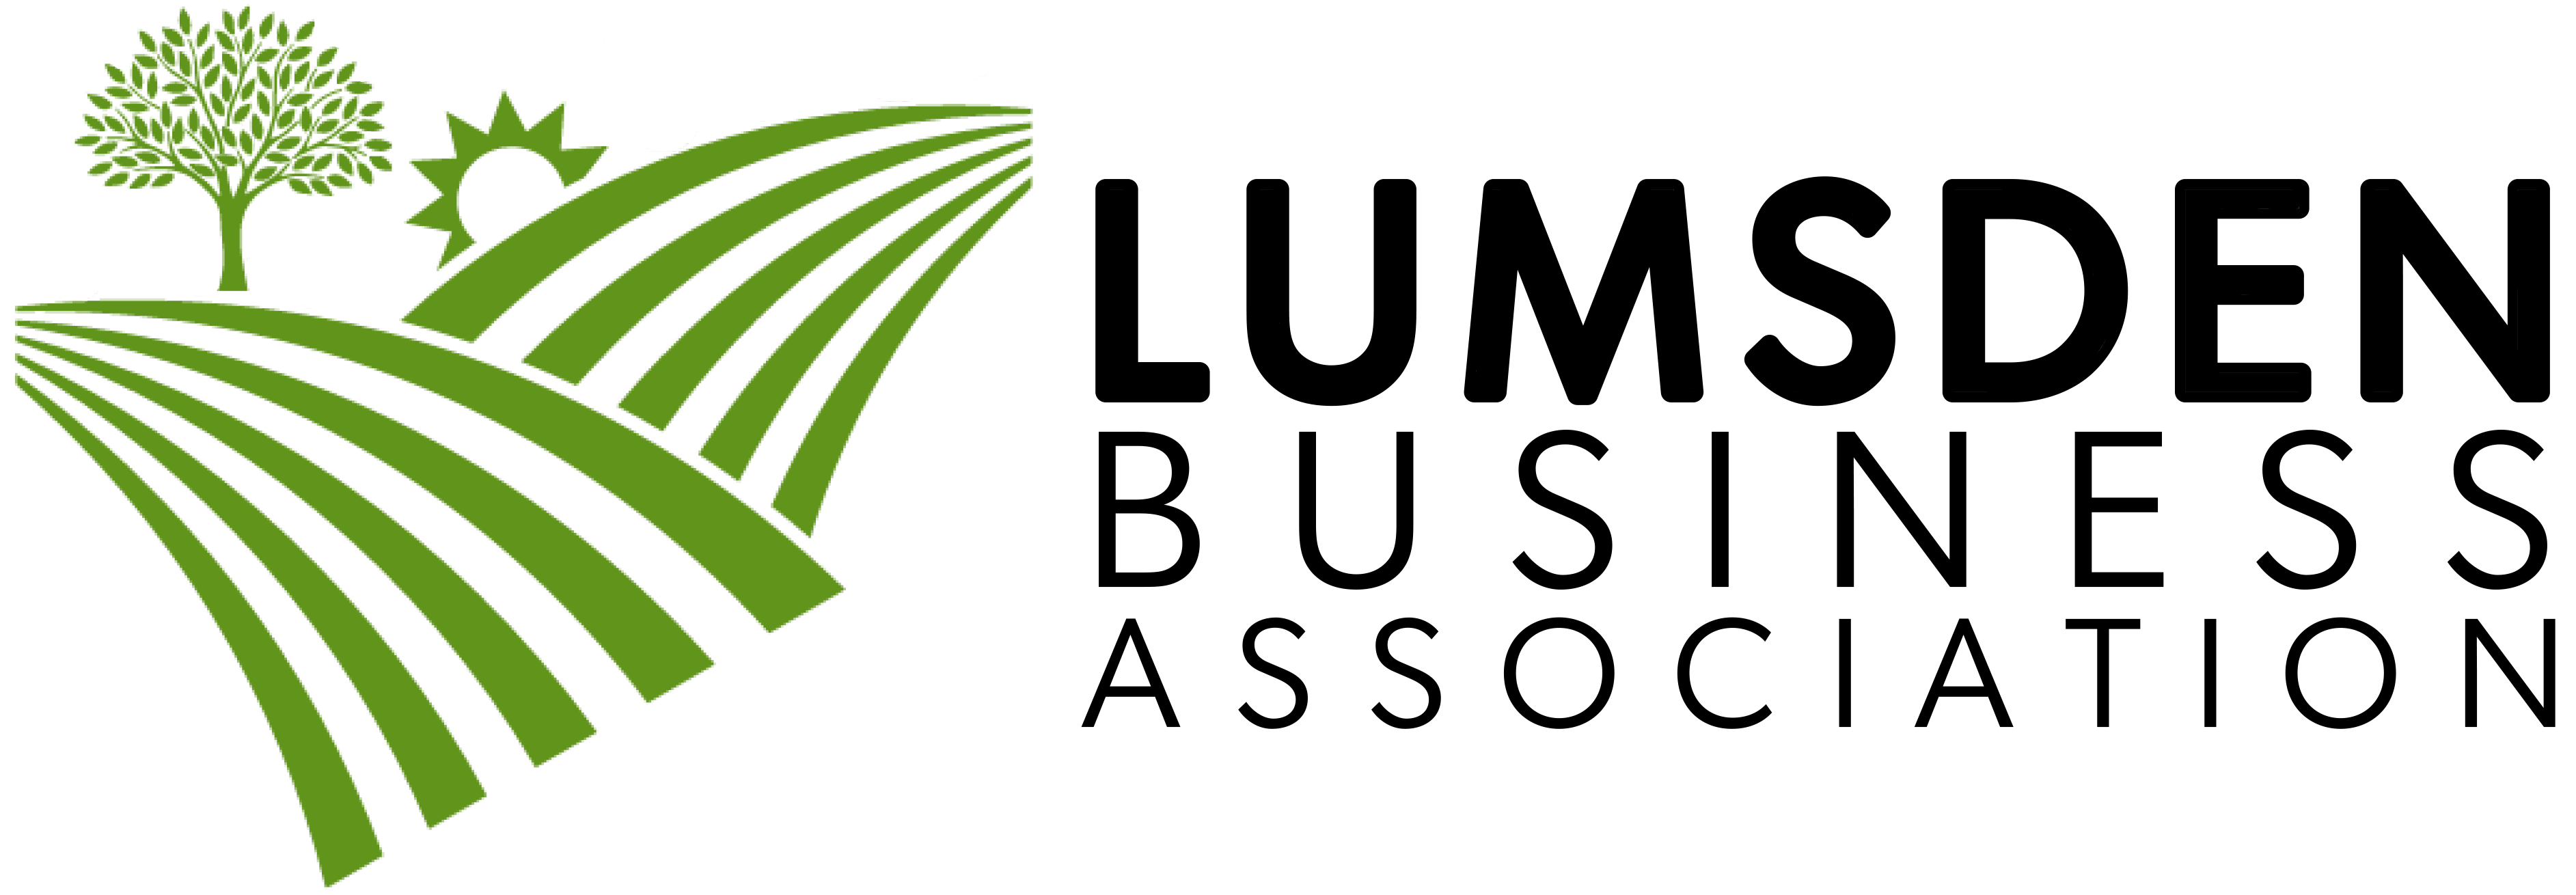 Lumsden Business Association